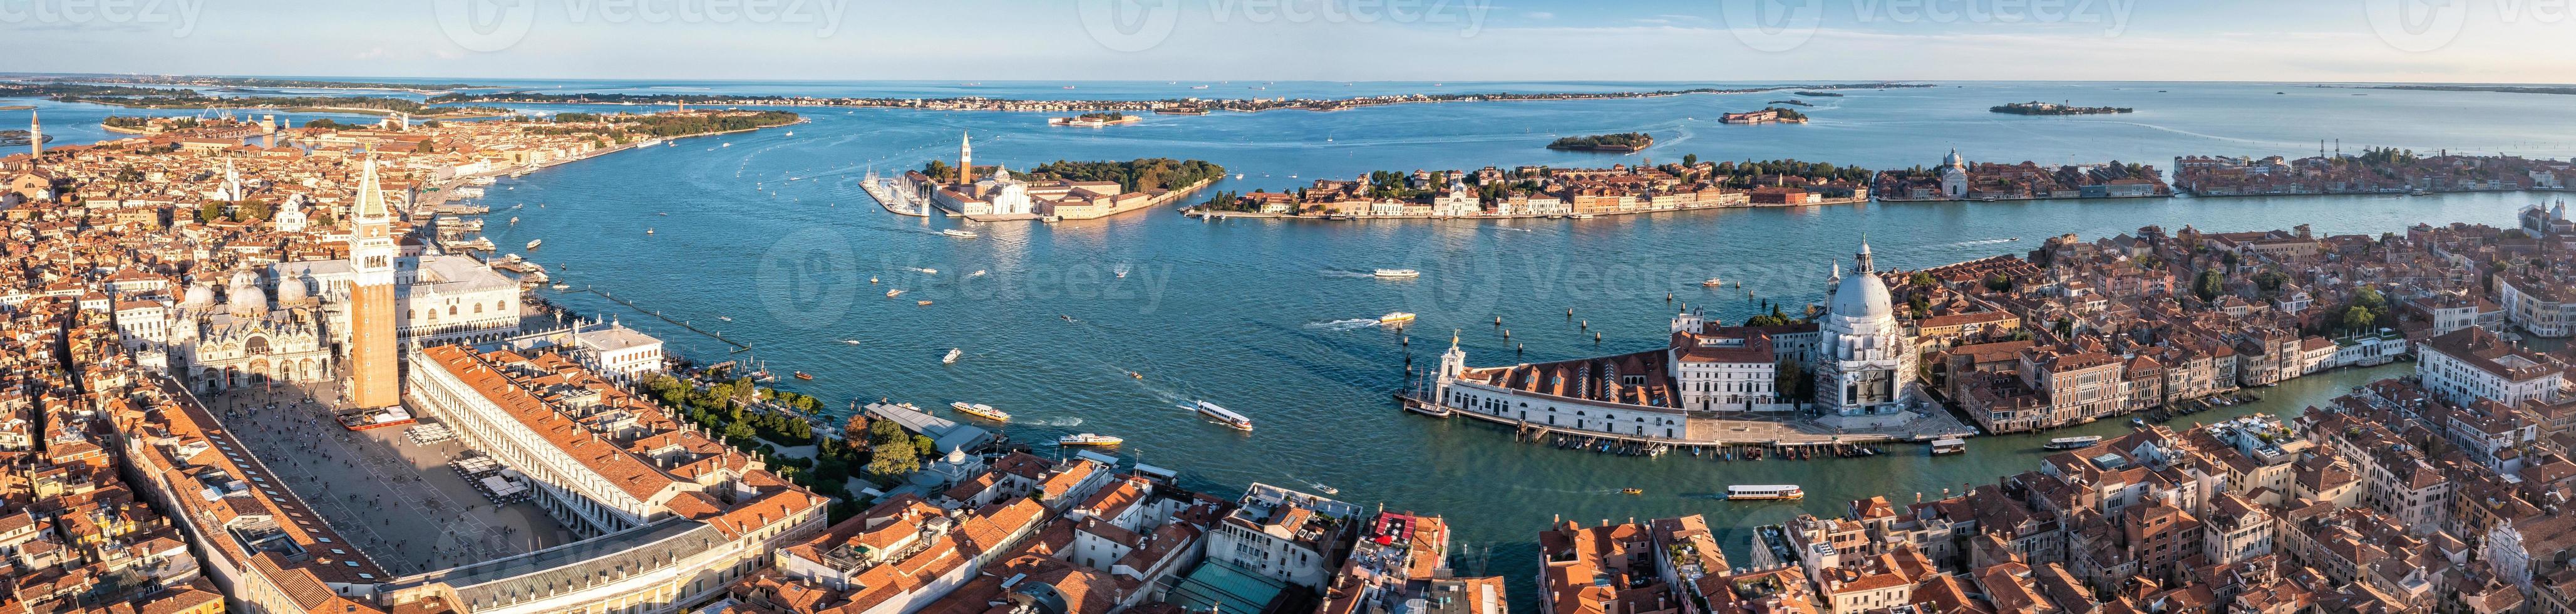 Luftaufnahme des ikonischen San Marco Square foto